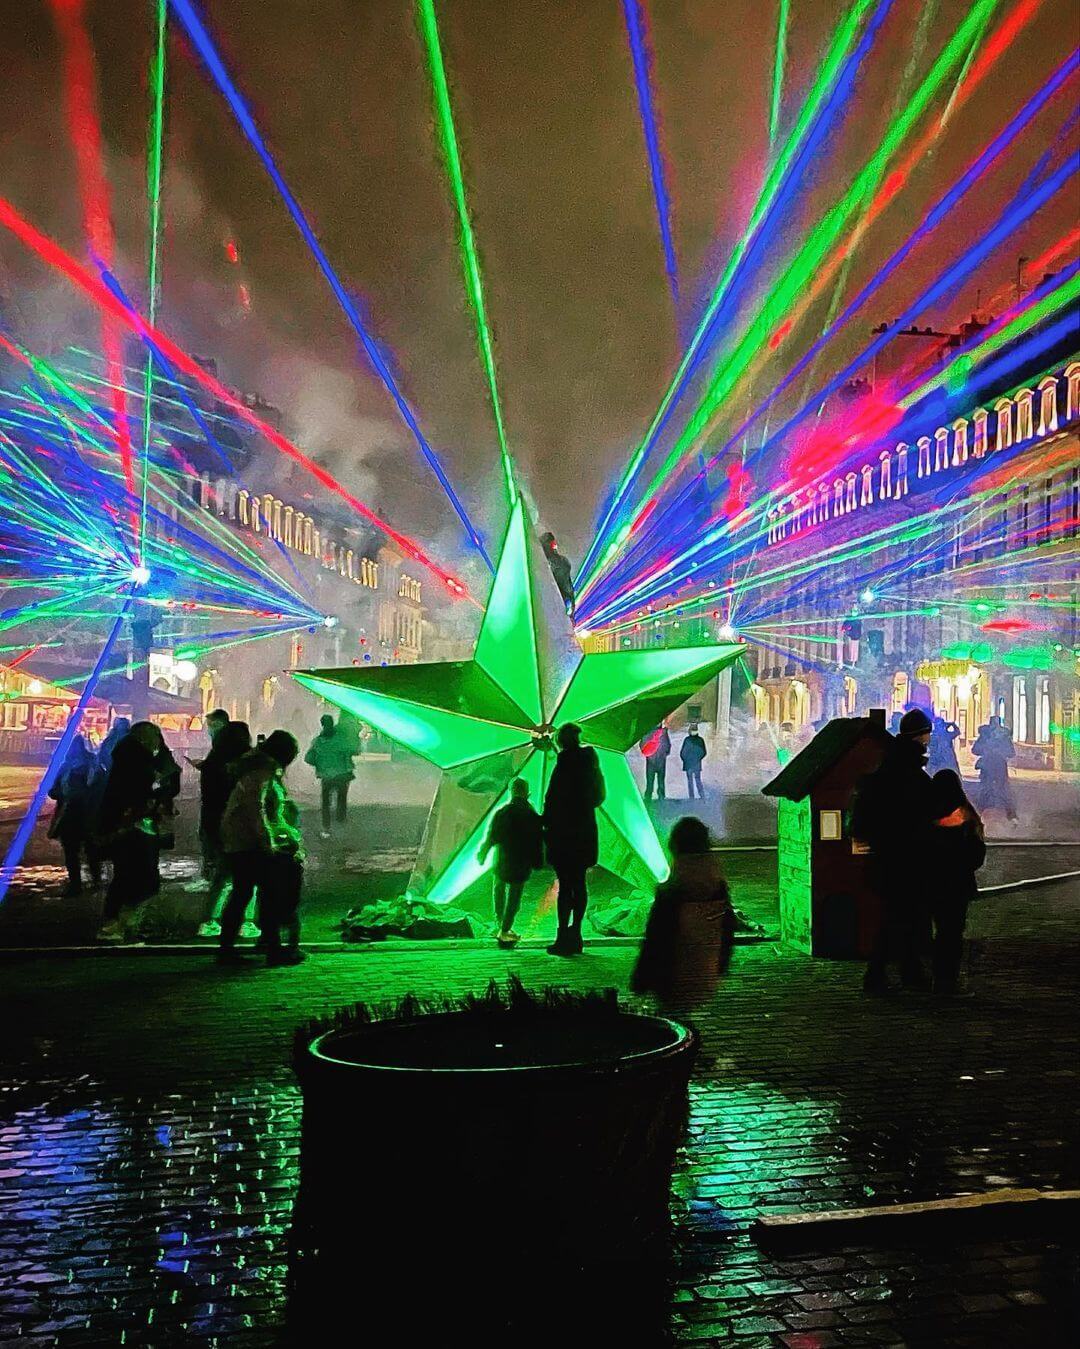 Europe Évènement - Rencontre des étoiles - Photo du centre ville de Caen avec des faisceaux lasers bleus, verts et rouges et une structure en forme d'étoile au centre